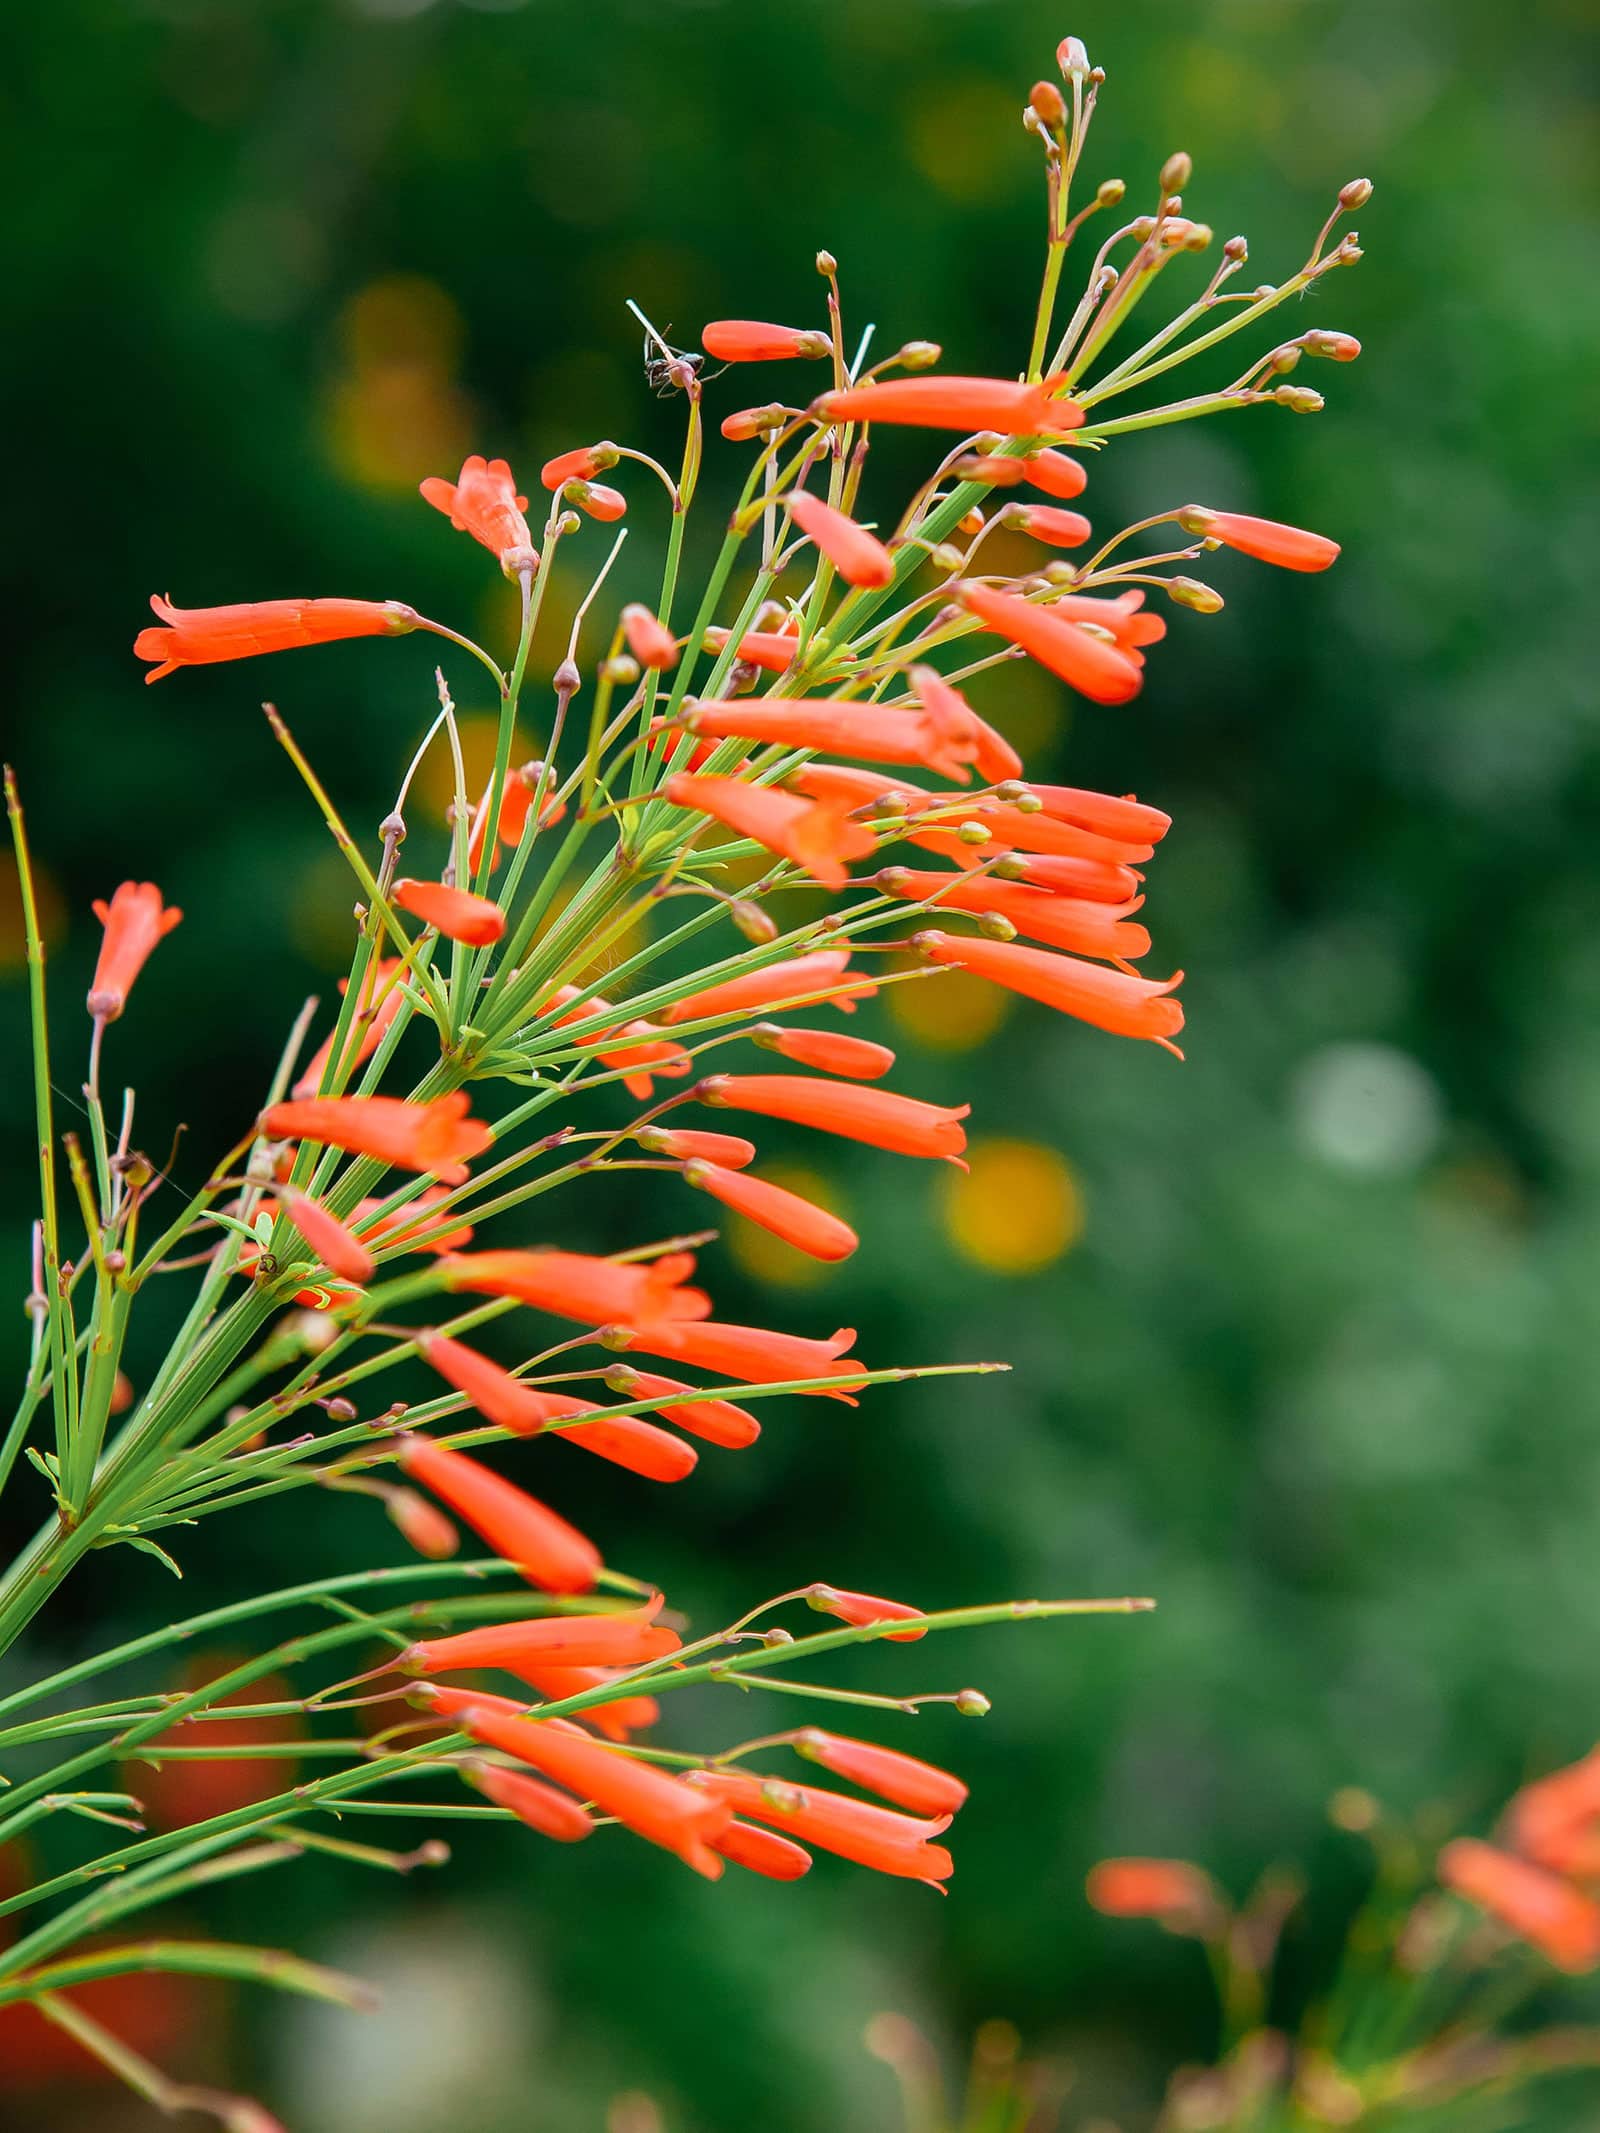 Orange flowers in bloom on firecracker plant